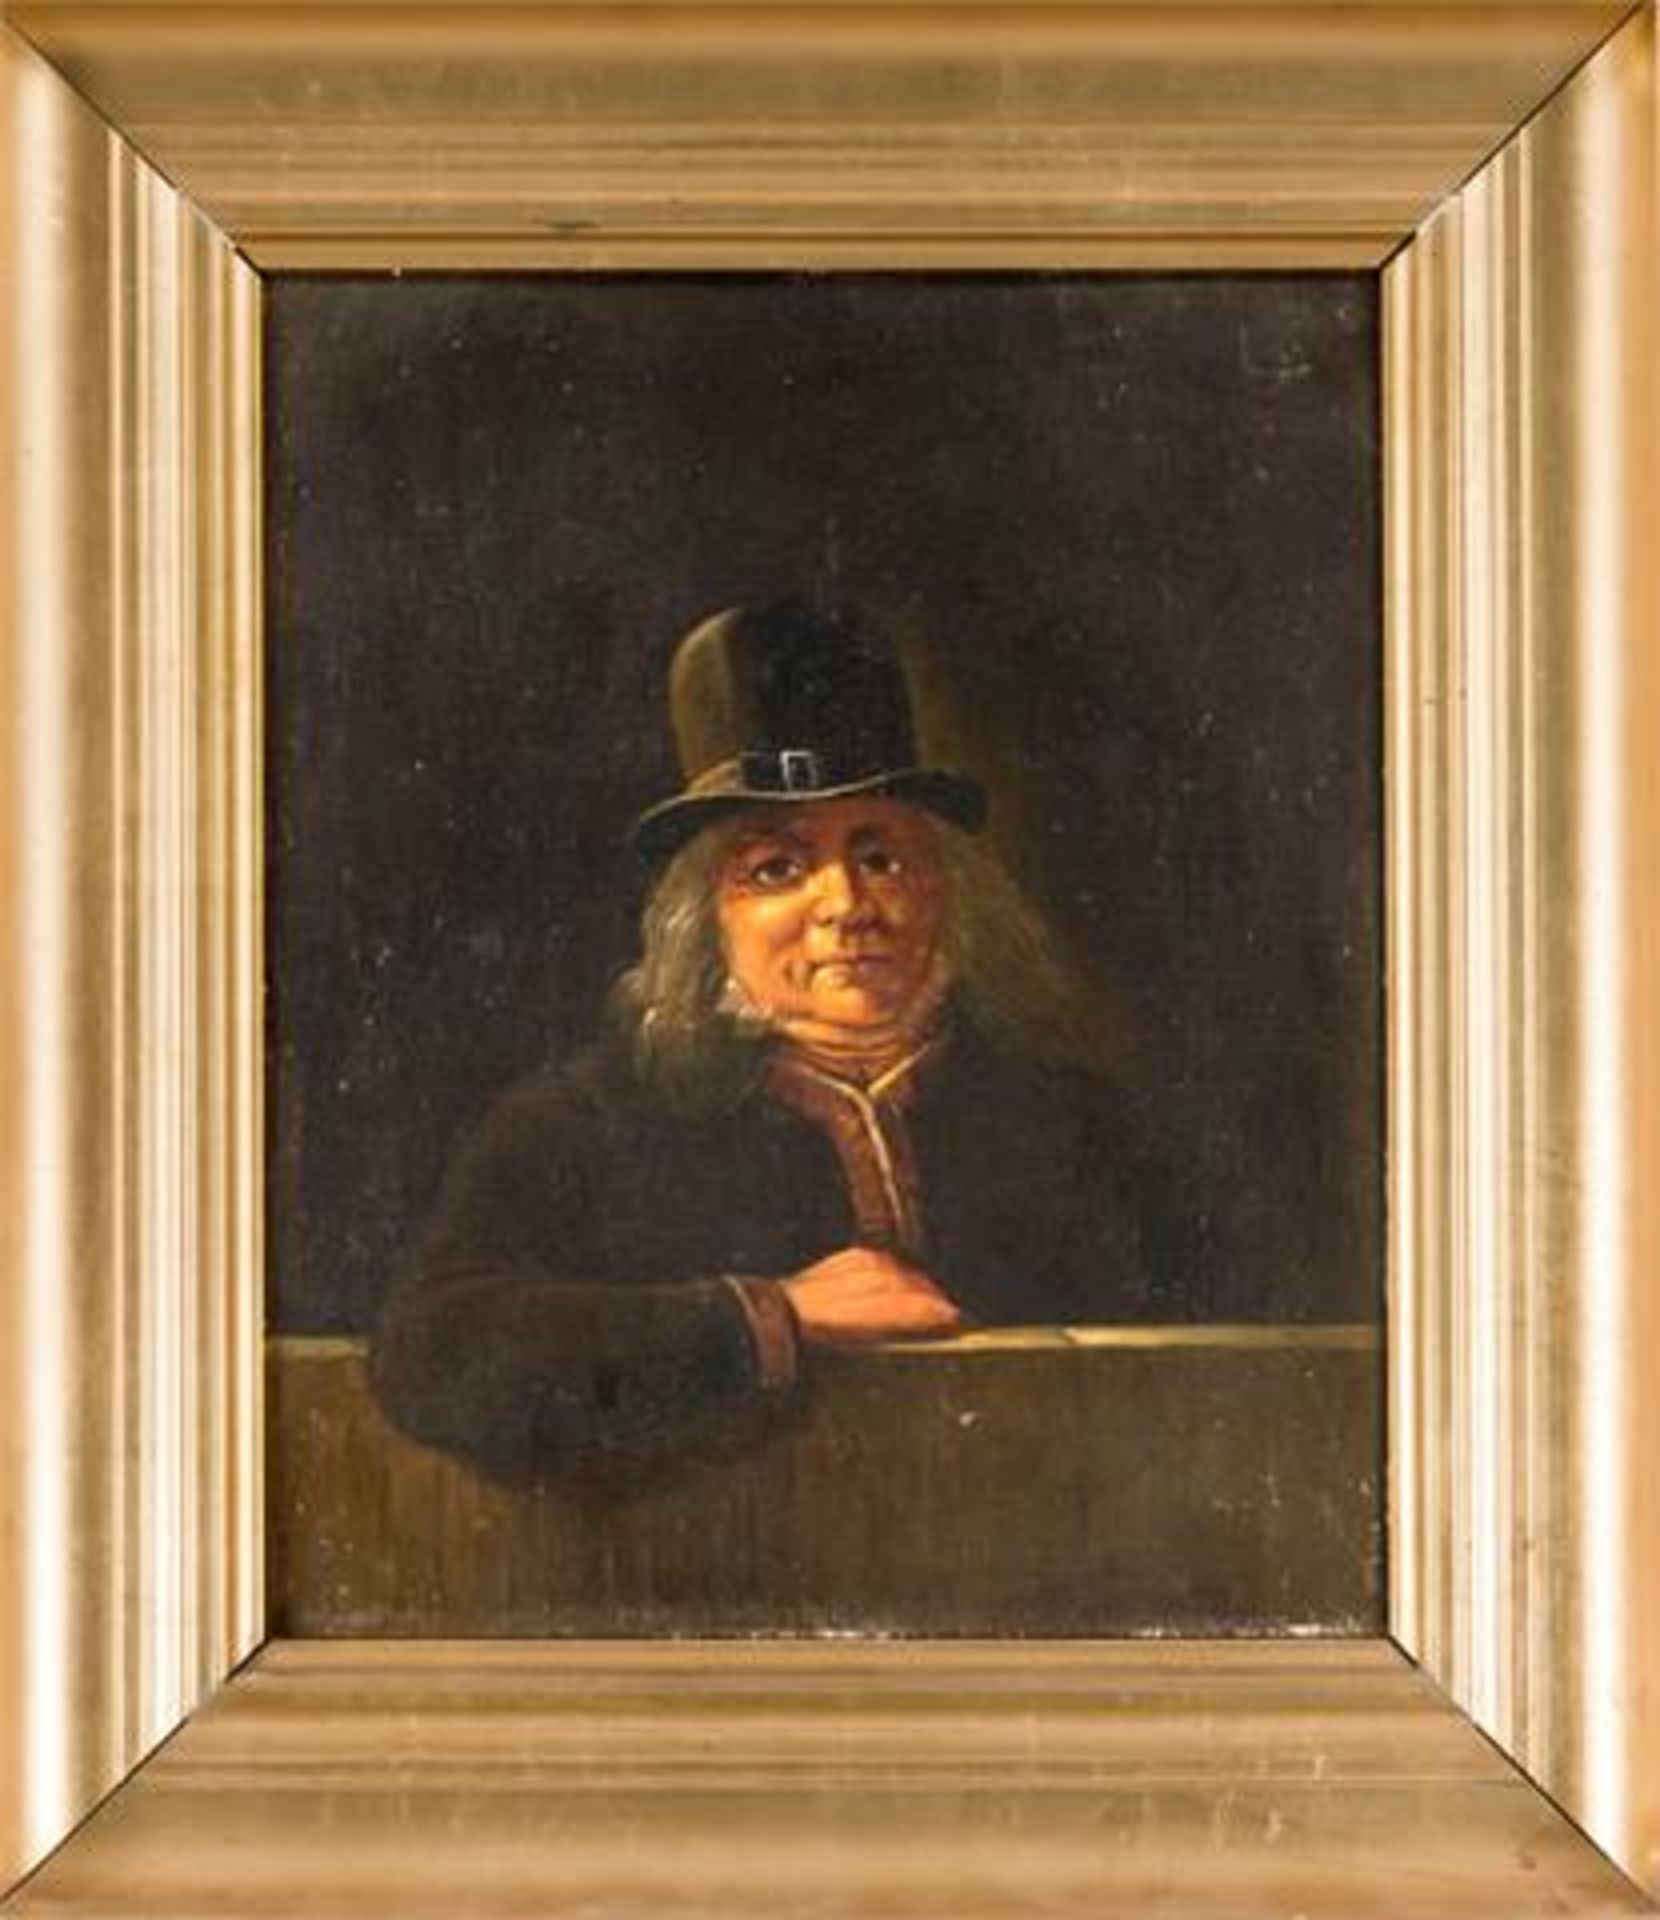 Bildnismaler des 19. Jh., Bildnis eines älteren Mannes mit längerem Haar und Hut auf einem Sims